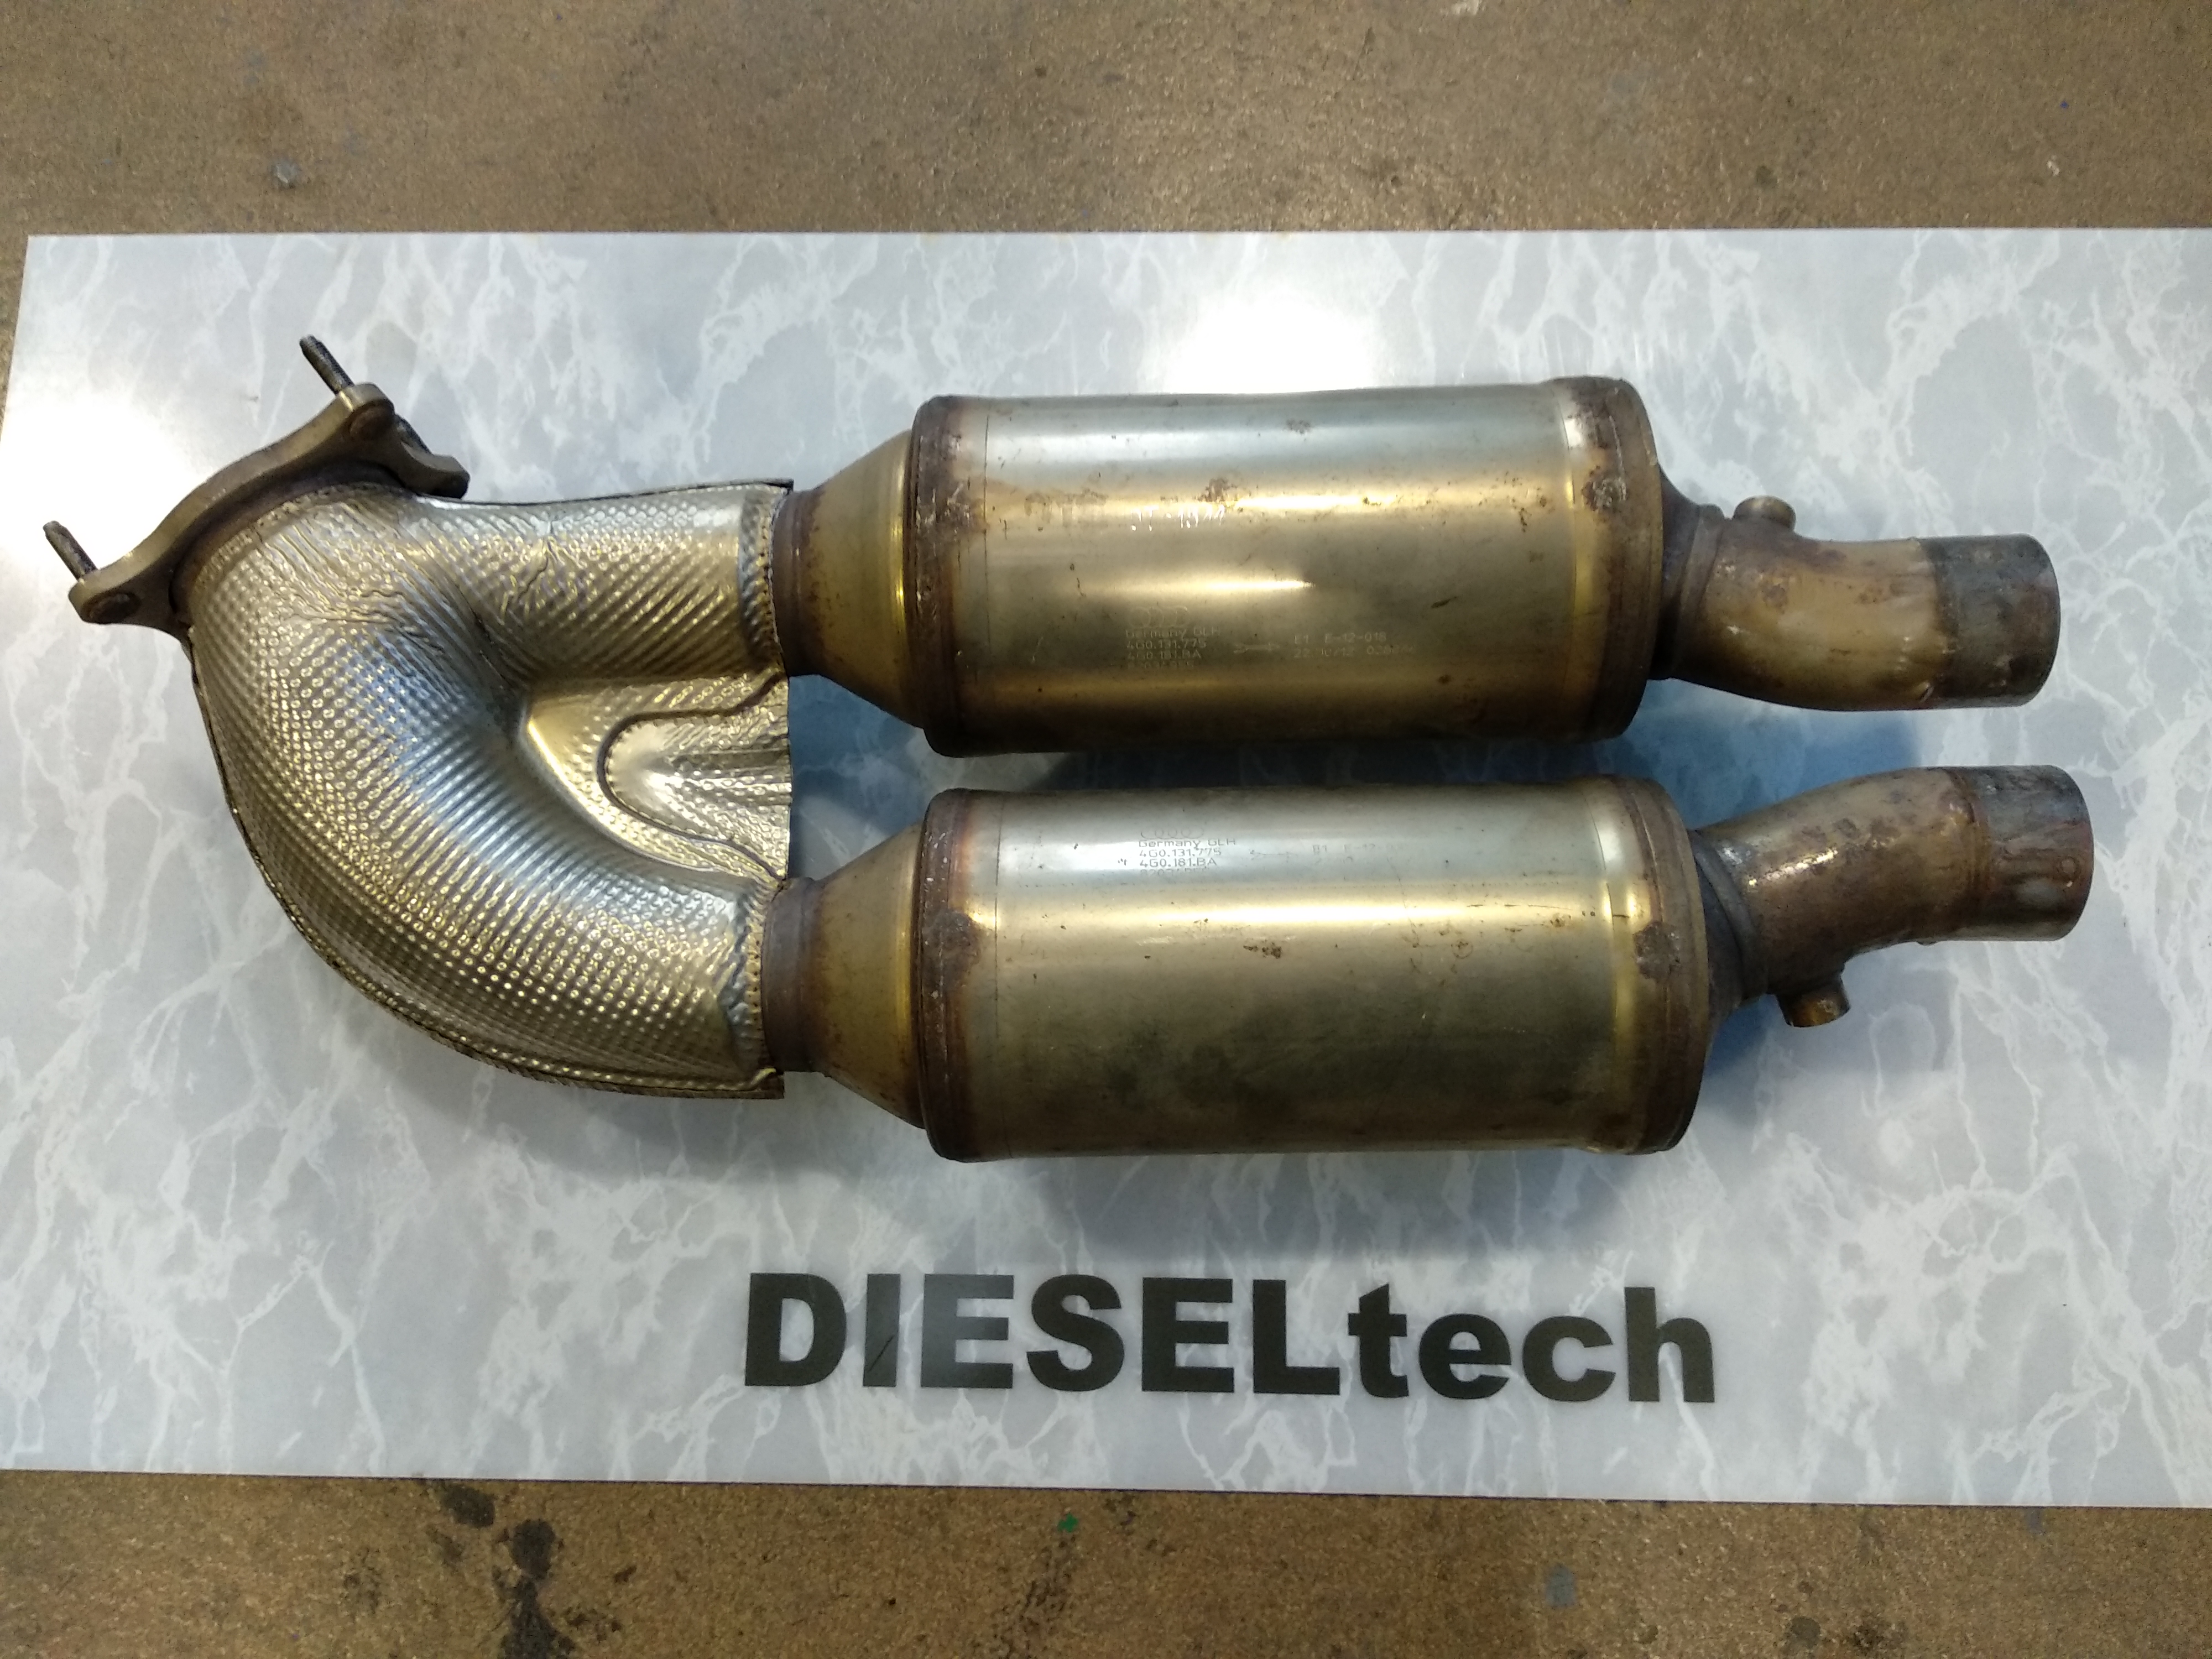 Russpartikelfilter (DPF) Reinigung - DIESELtech - Ihr Spezialist für  Dieselmotoren in der Schweiz